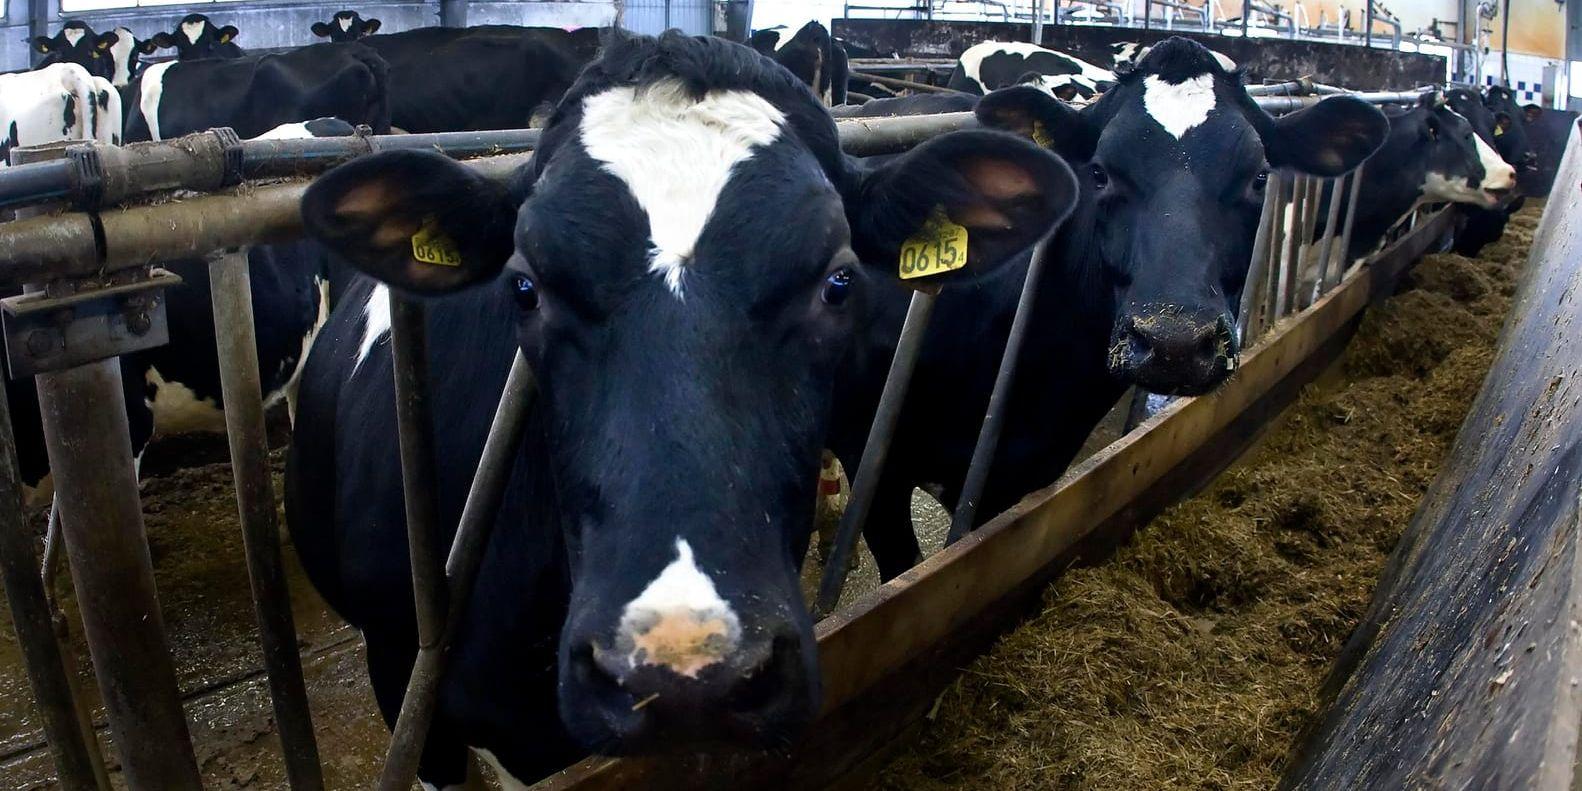 Behov av bidrag. Situationen för mjölkproducenter i Halland är ansträngd, enligt Andreas Richardsson, ordförande i LRF Hallands regionstyrelse. I veckan presenterade EU-kommissionen ett krispaket för att stötta mjölkbönder.